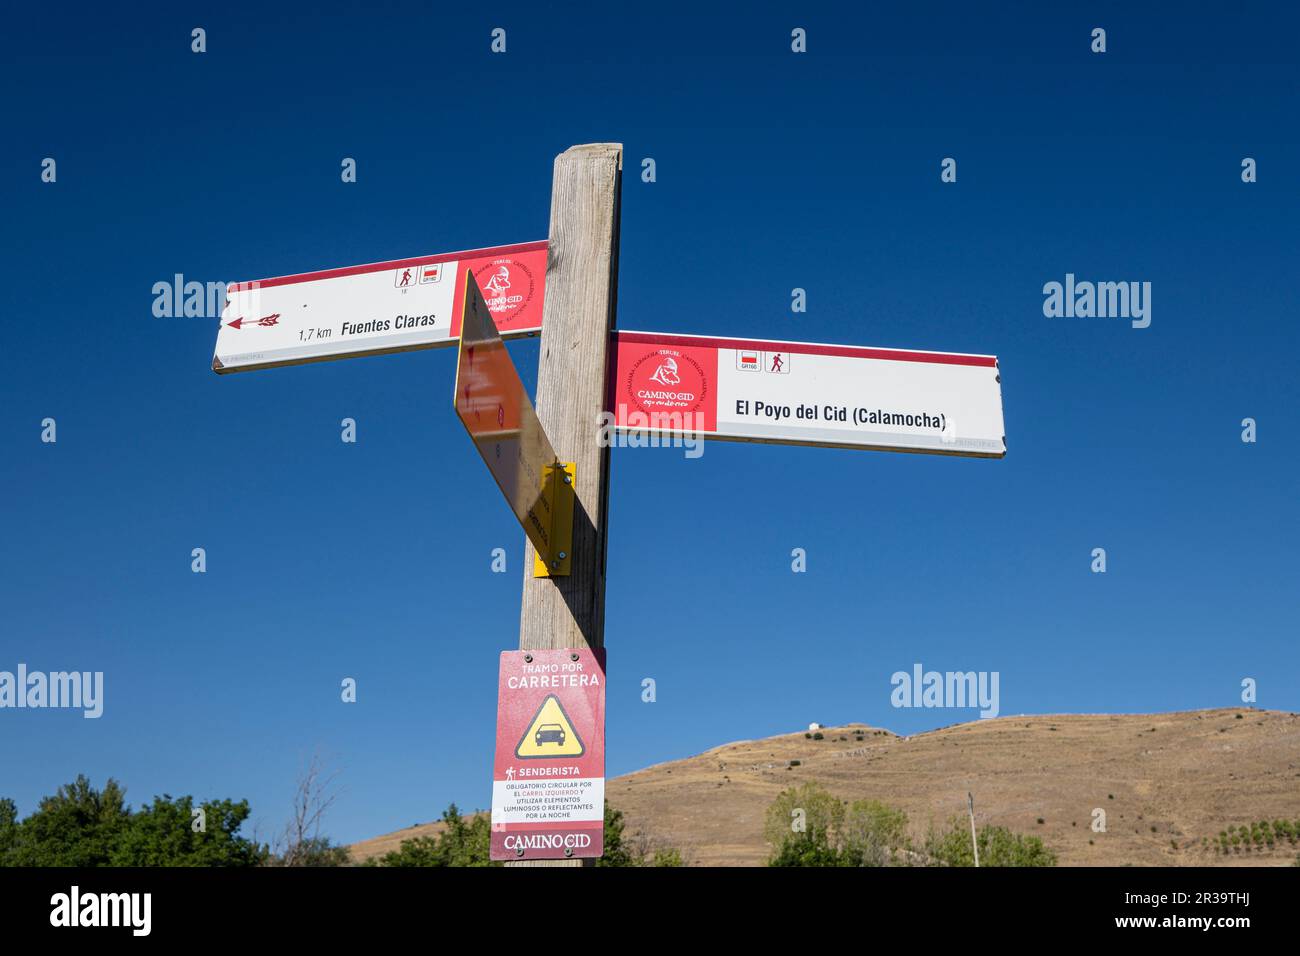 camino del Cid, El Poyo del Cid municipio de Calamocha, provincia de Teruel, Aragón, Spain, Europe. Stock Photo